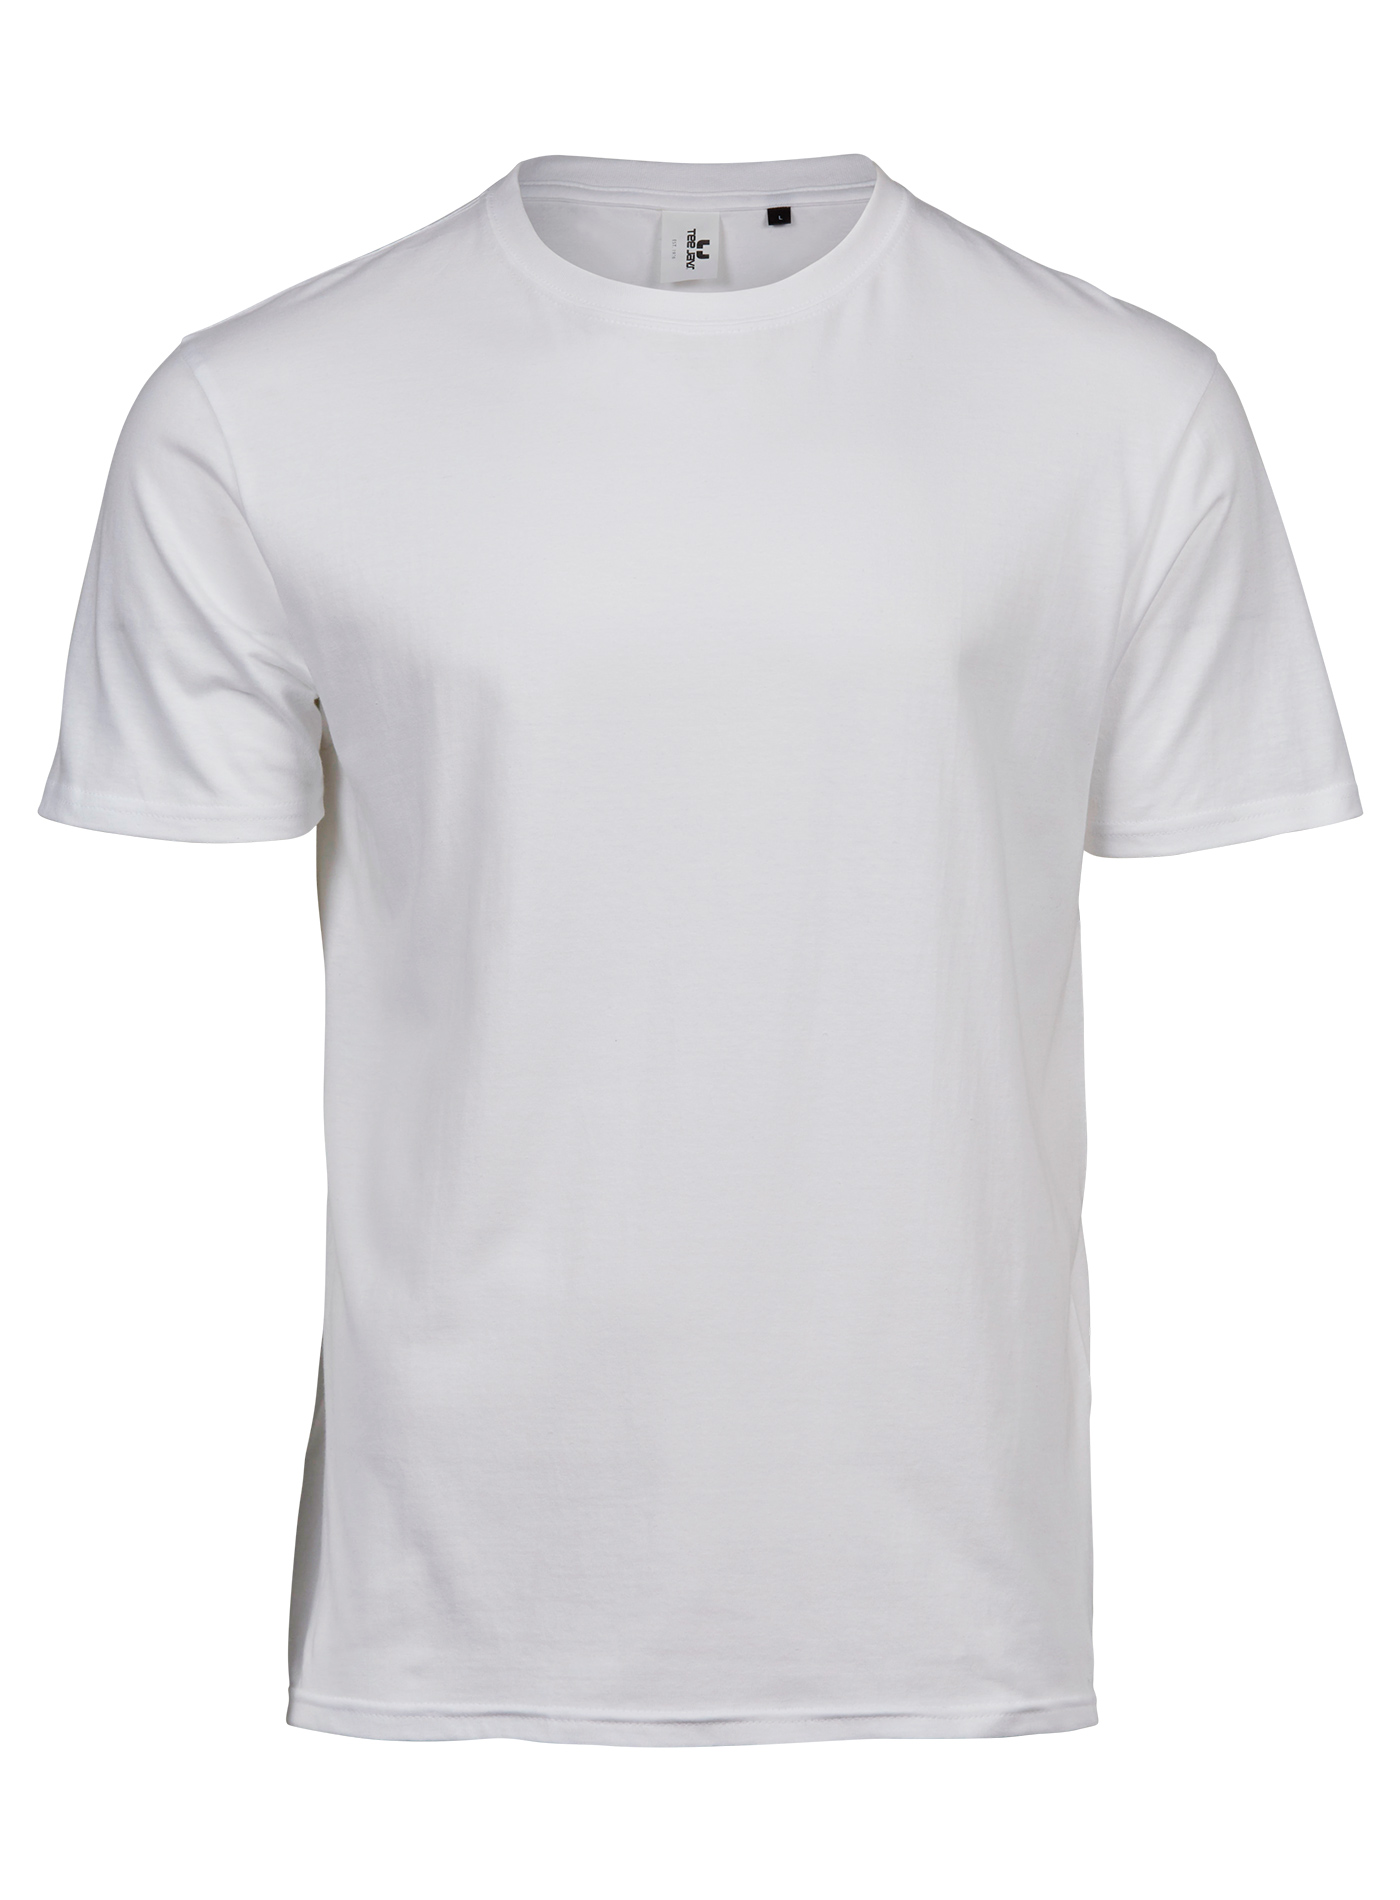 Pánské tričko Tee Jays Power - Bílá XS